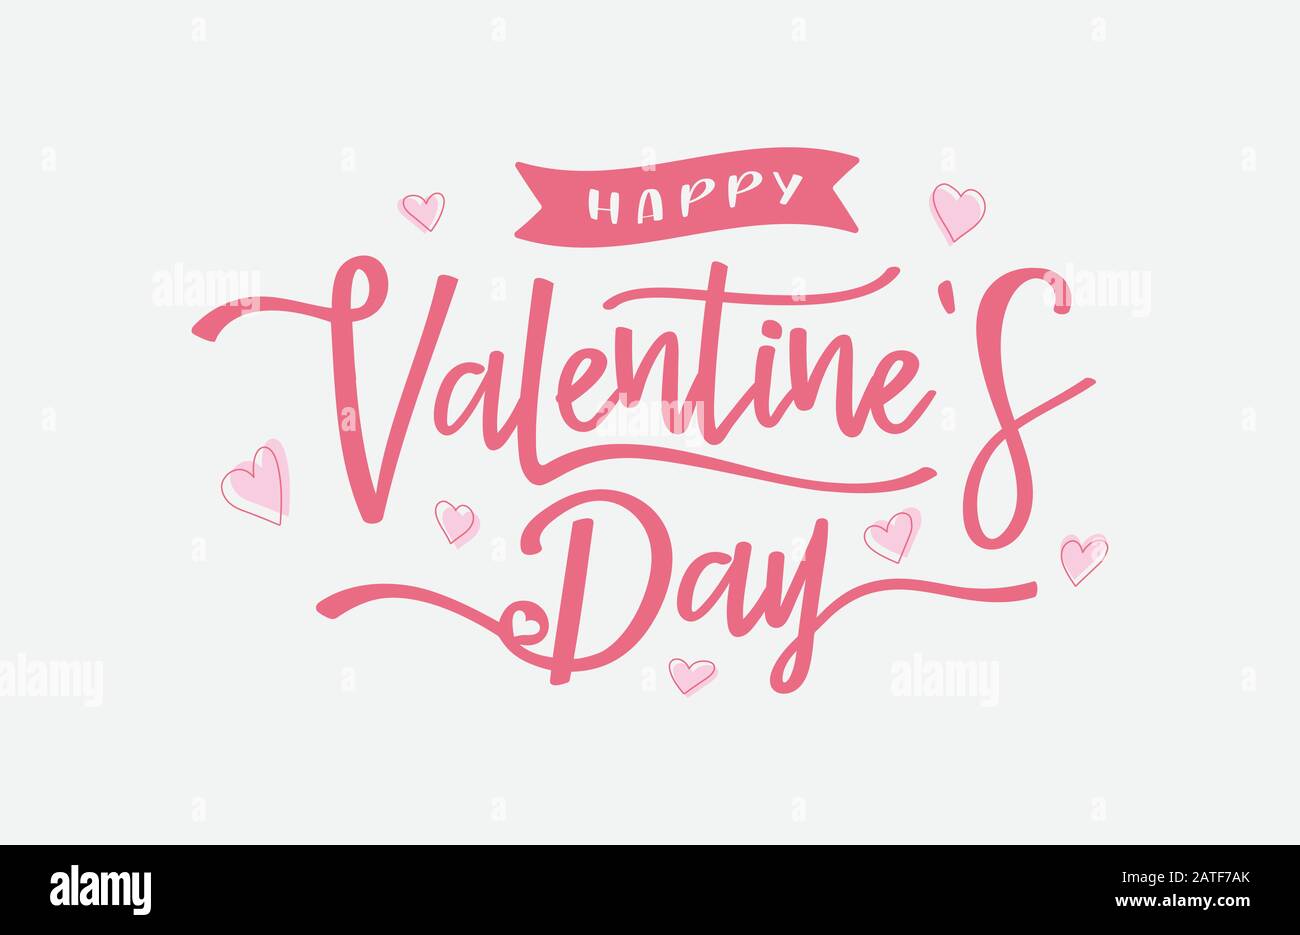 Happy Valentine Day Vector, Handzeichnung Vector Schriftzug Design Illustration, romantisches Zitat Postkarte, Karte, Einladung, Banner Vorlage Stock Vektor